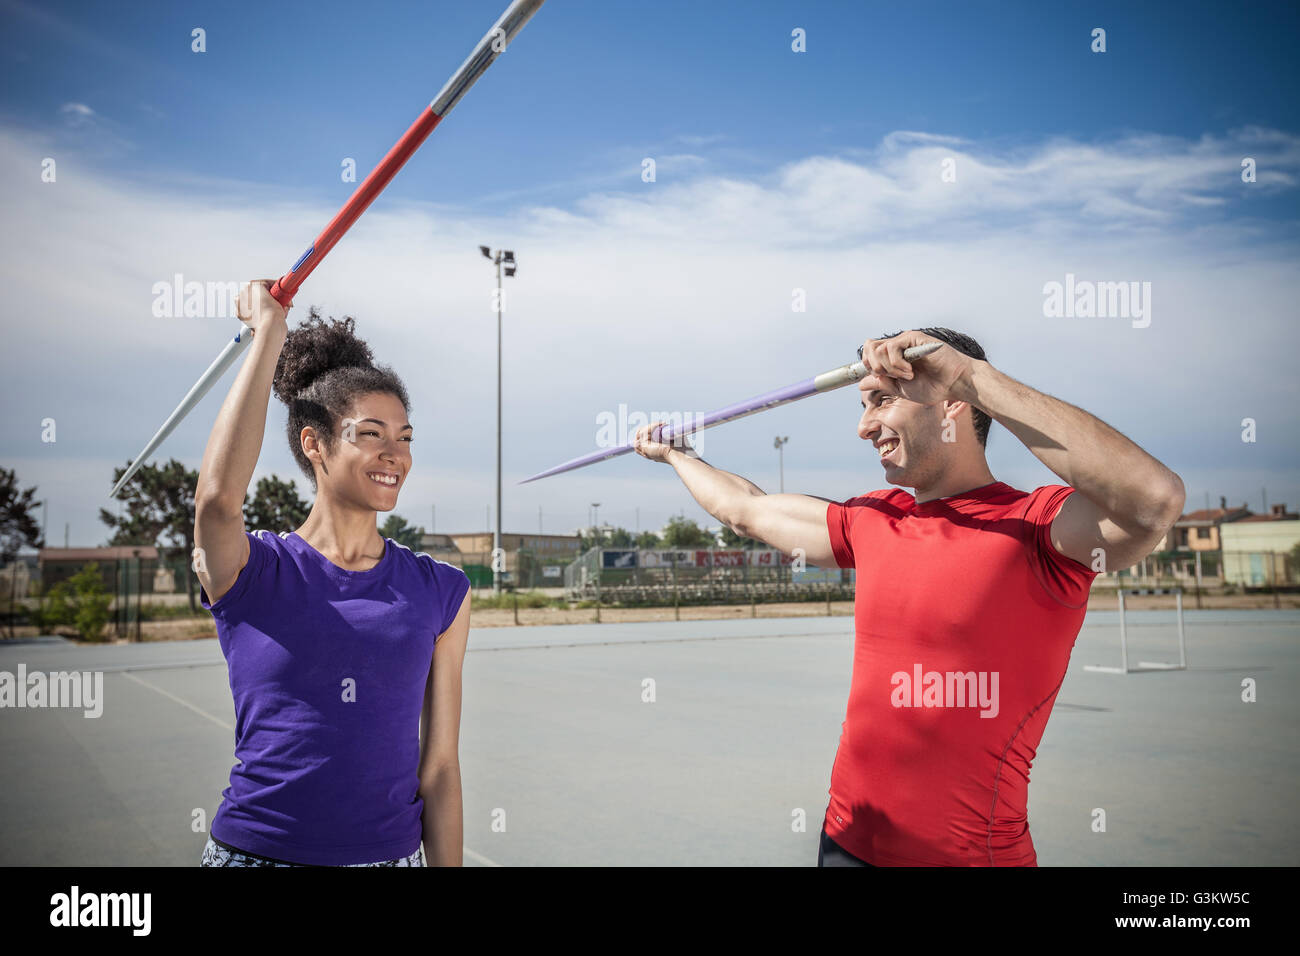 Mann, weibliche Speerwerfer am Sportplatz anweisen Stockfoto